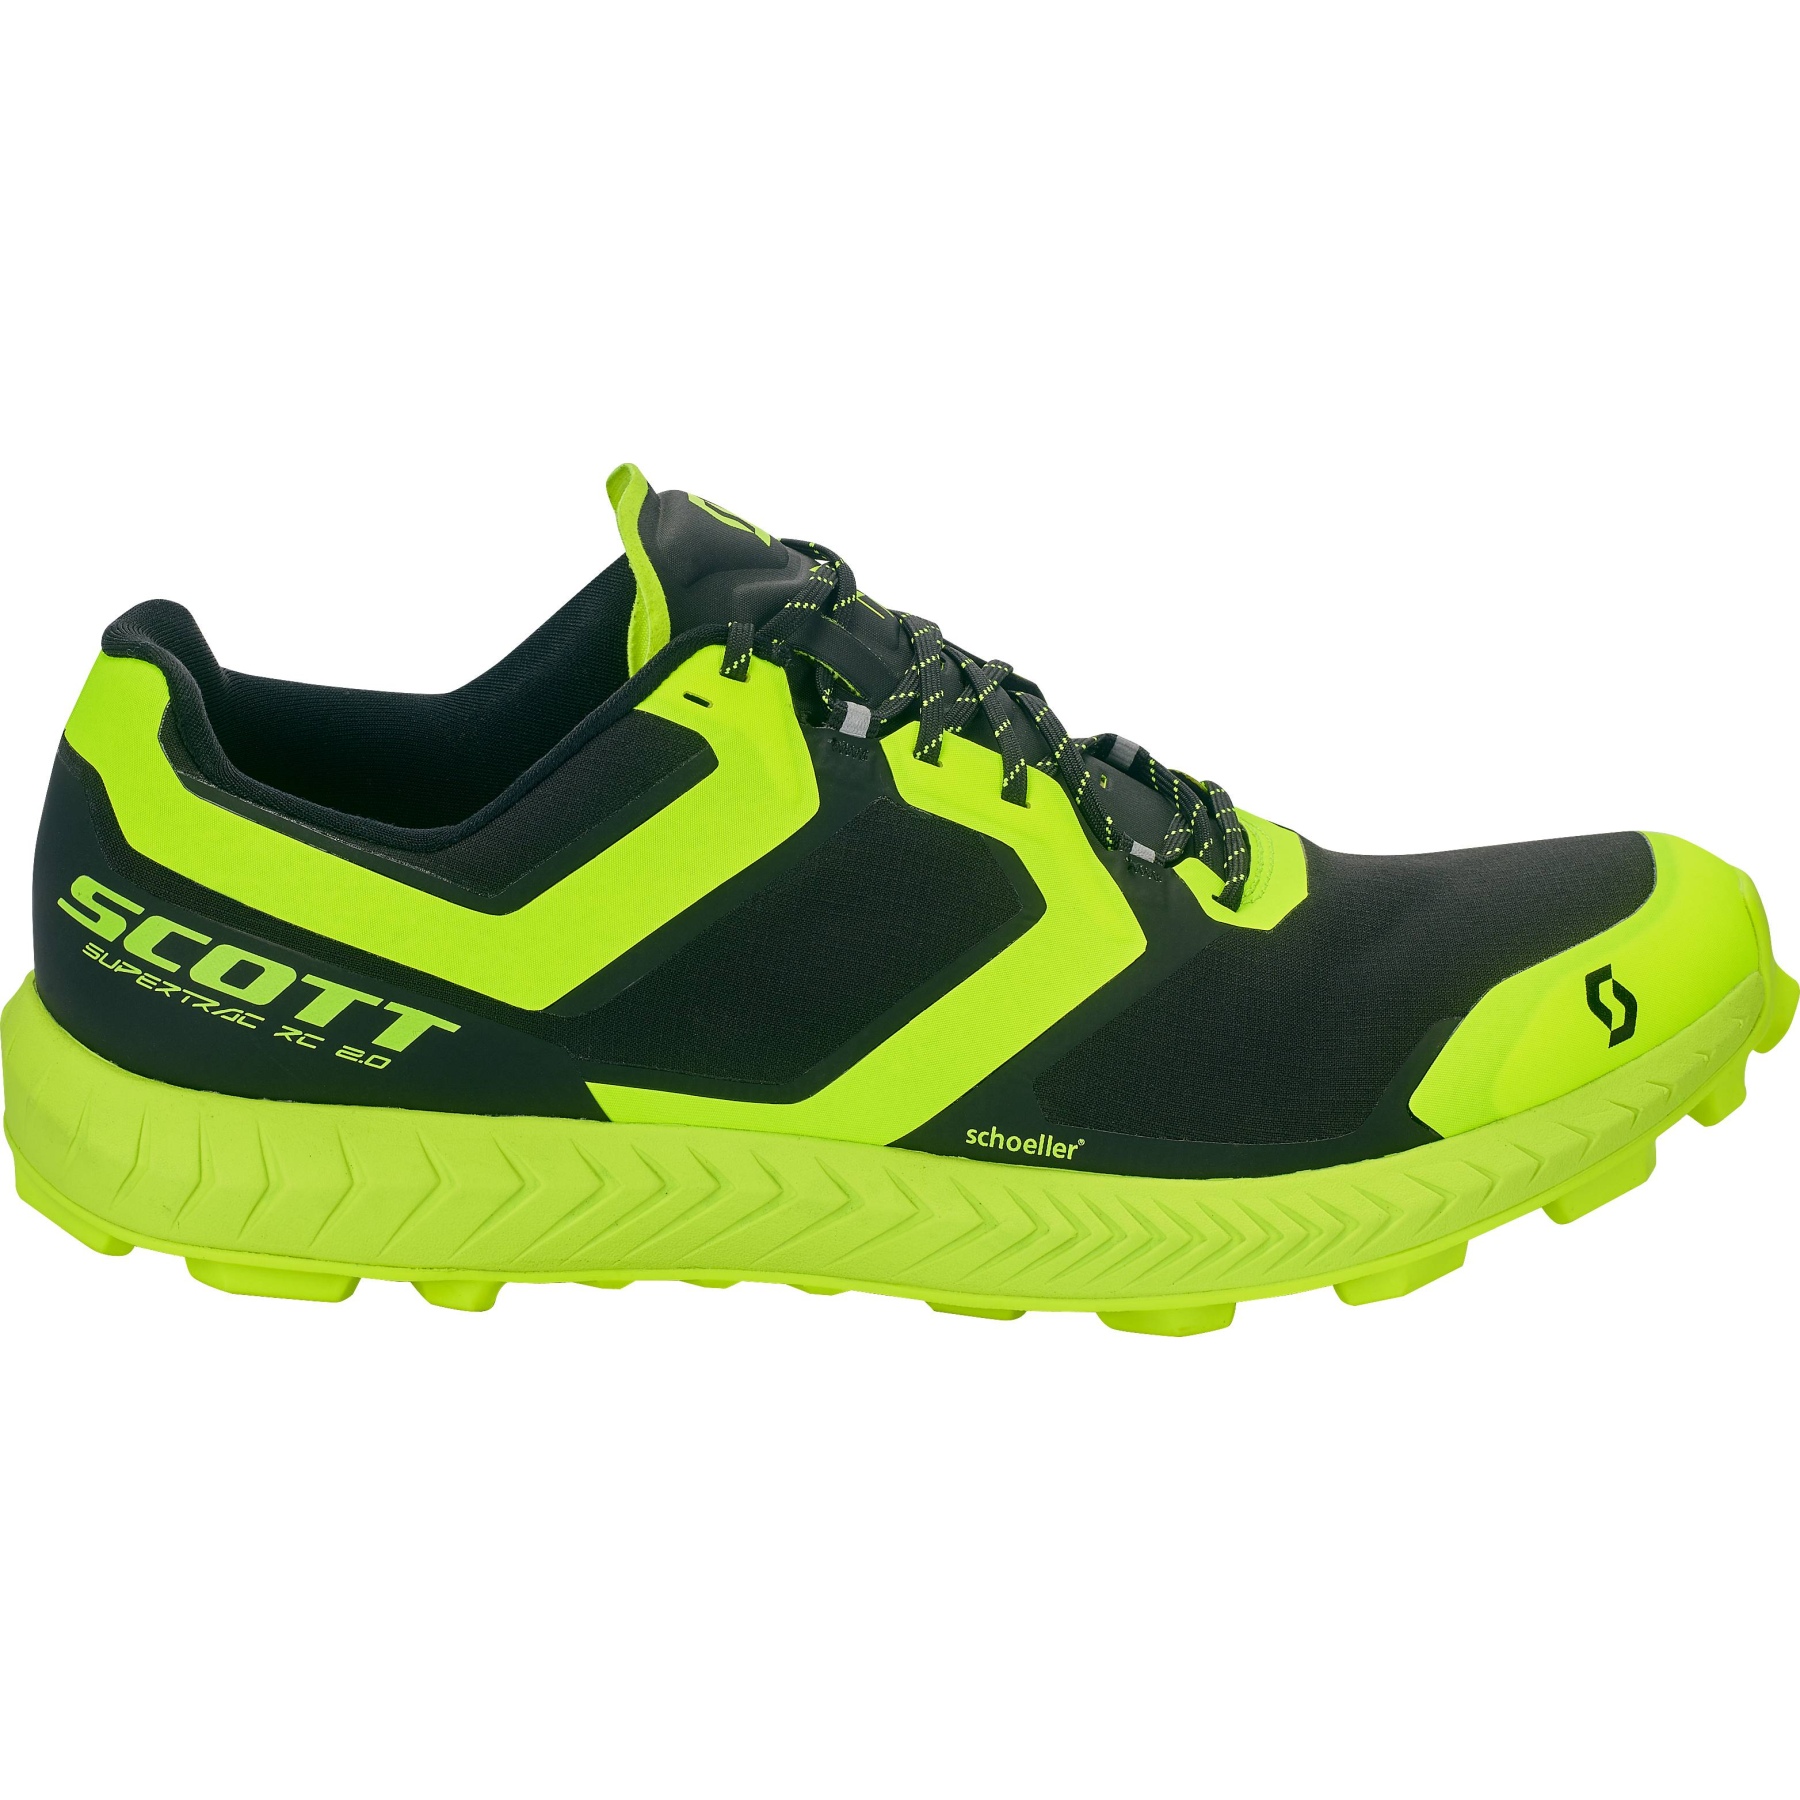 Produktbild von SCOTT Supertrac RC 2 Schuhe - schwarz/gelb